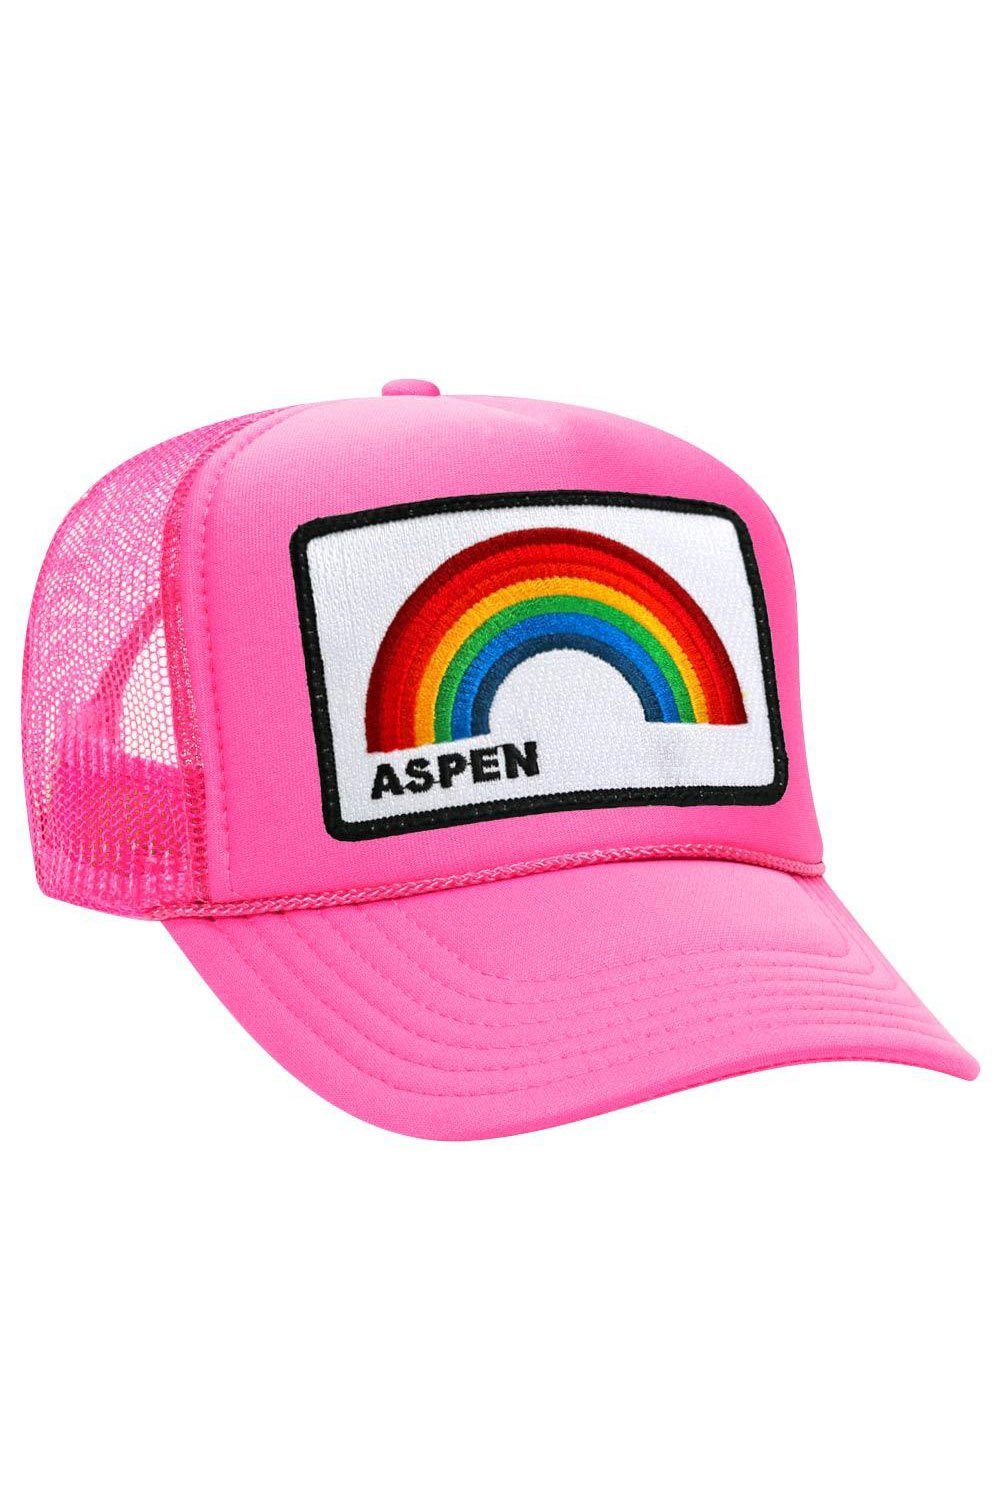 ASPEN RAINBOW TRUCKER HAT HATS Aviator Nation OS NEON PINK 